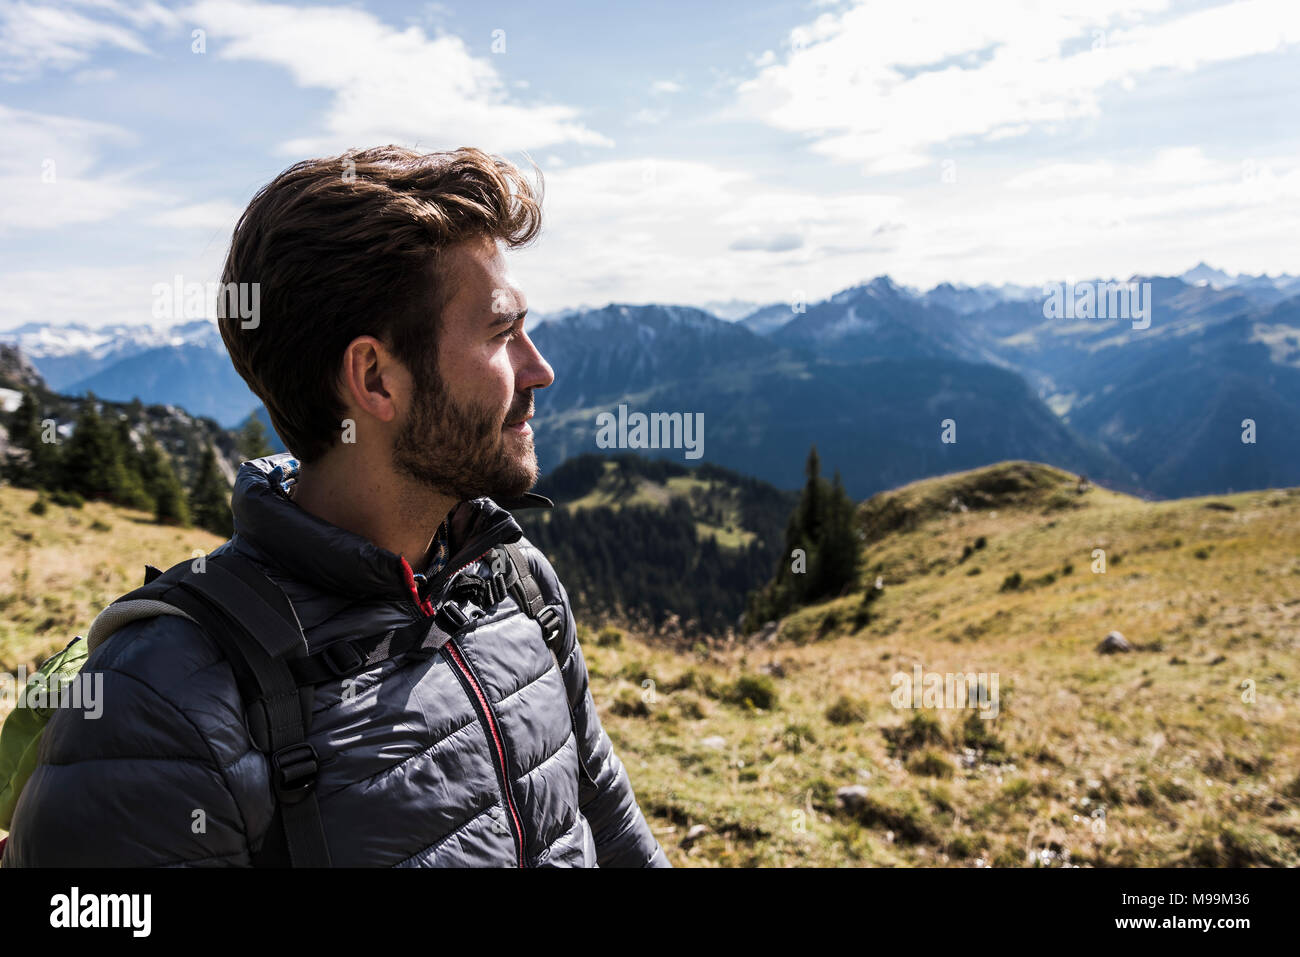 Österreich, Tirol, Portrait des jungen Mannes in der Bergwelt zu betrachten Stockfoto